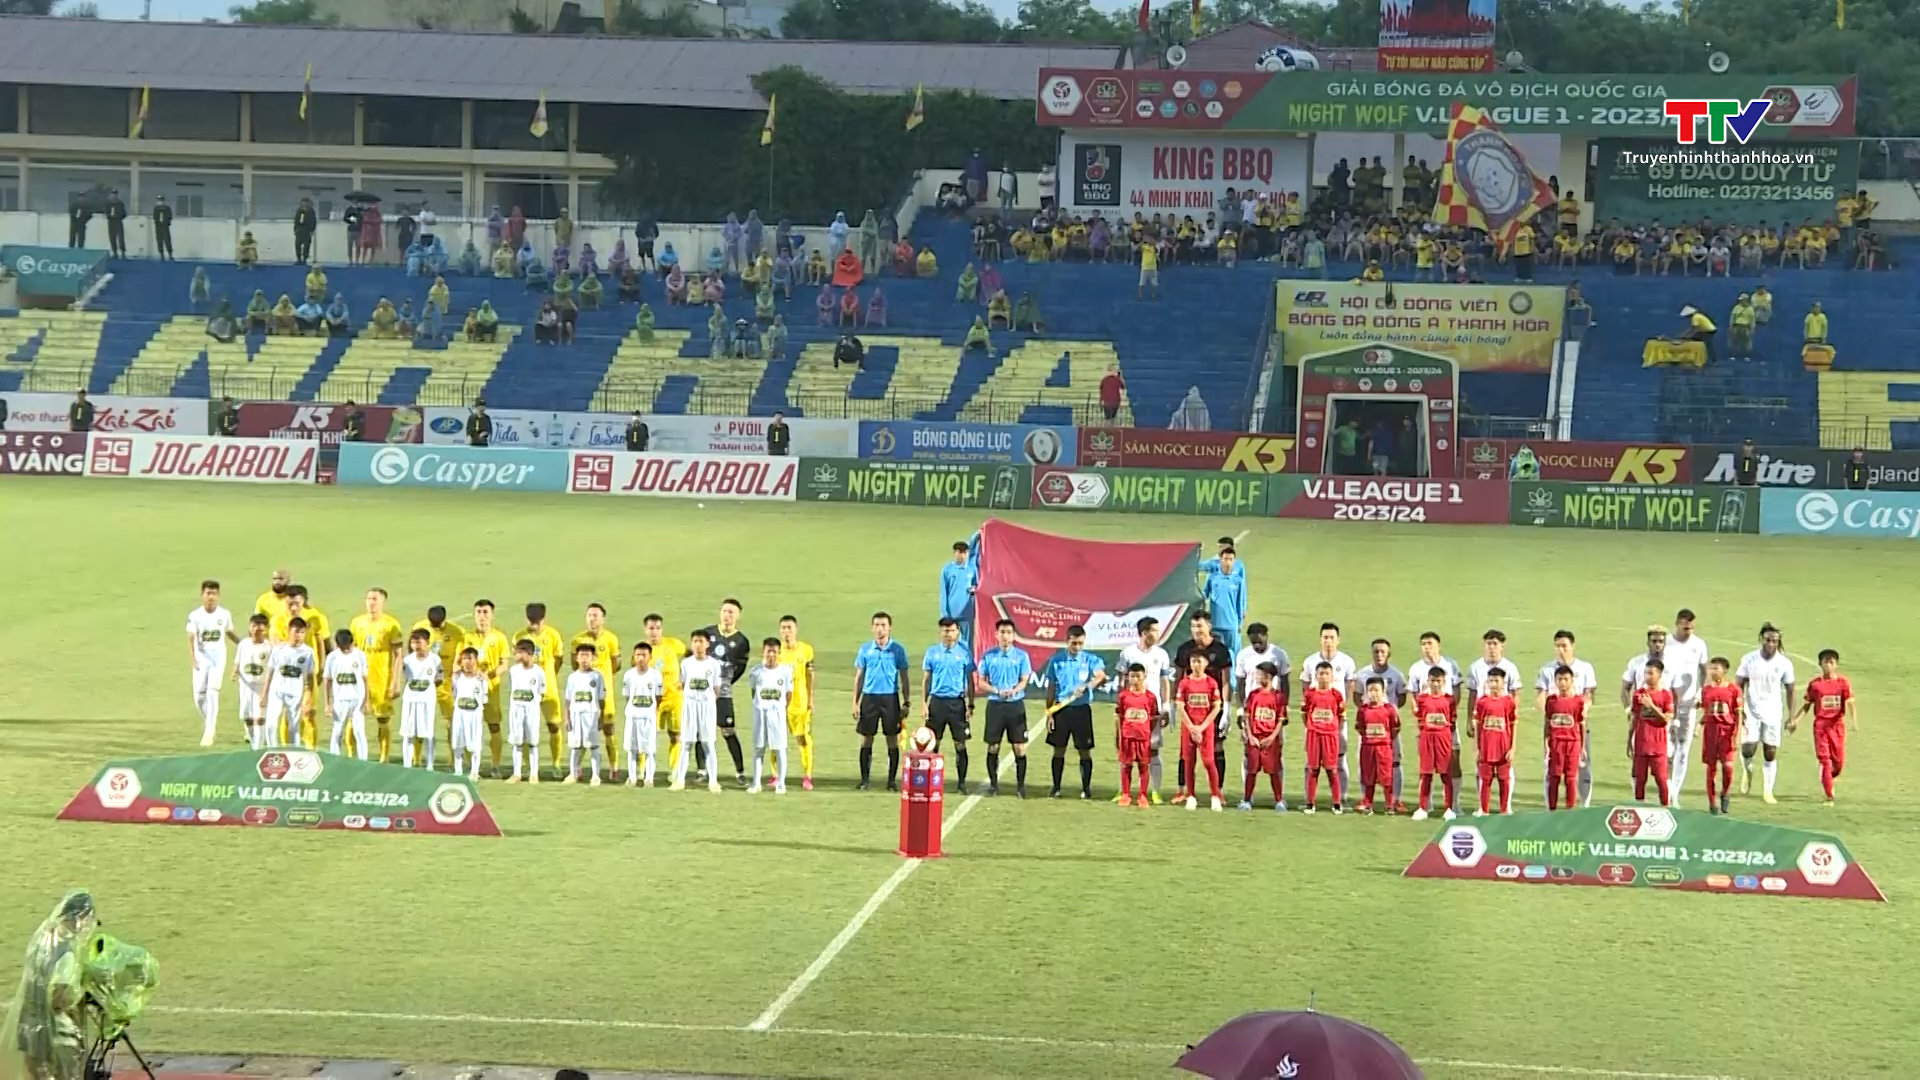 Đánh bại Bình Dương, Câu lạc bộ bóng đá Đông Á Thanh Hoá chấm dứt mạch 7 trận không thắng- Ảnh 1.